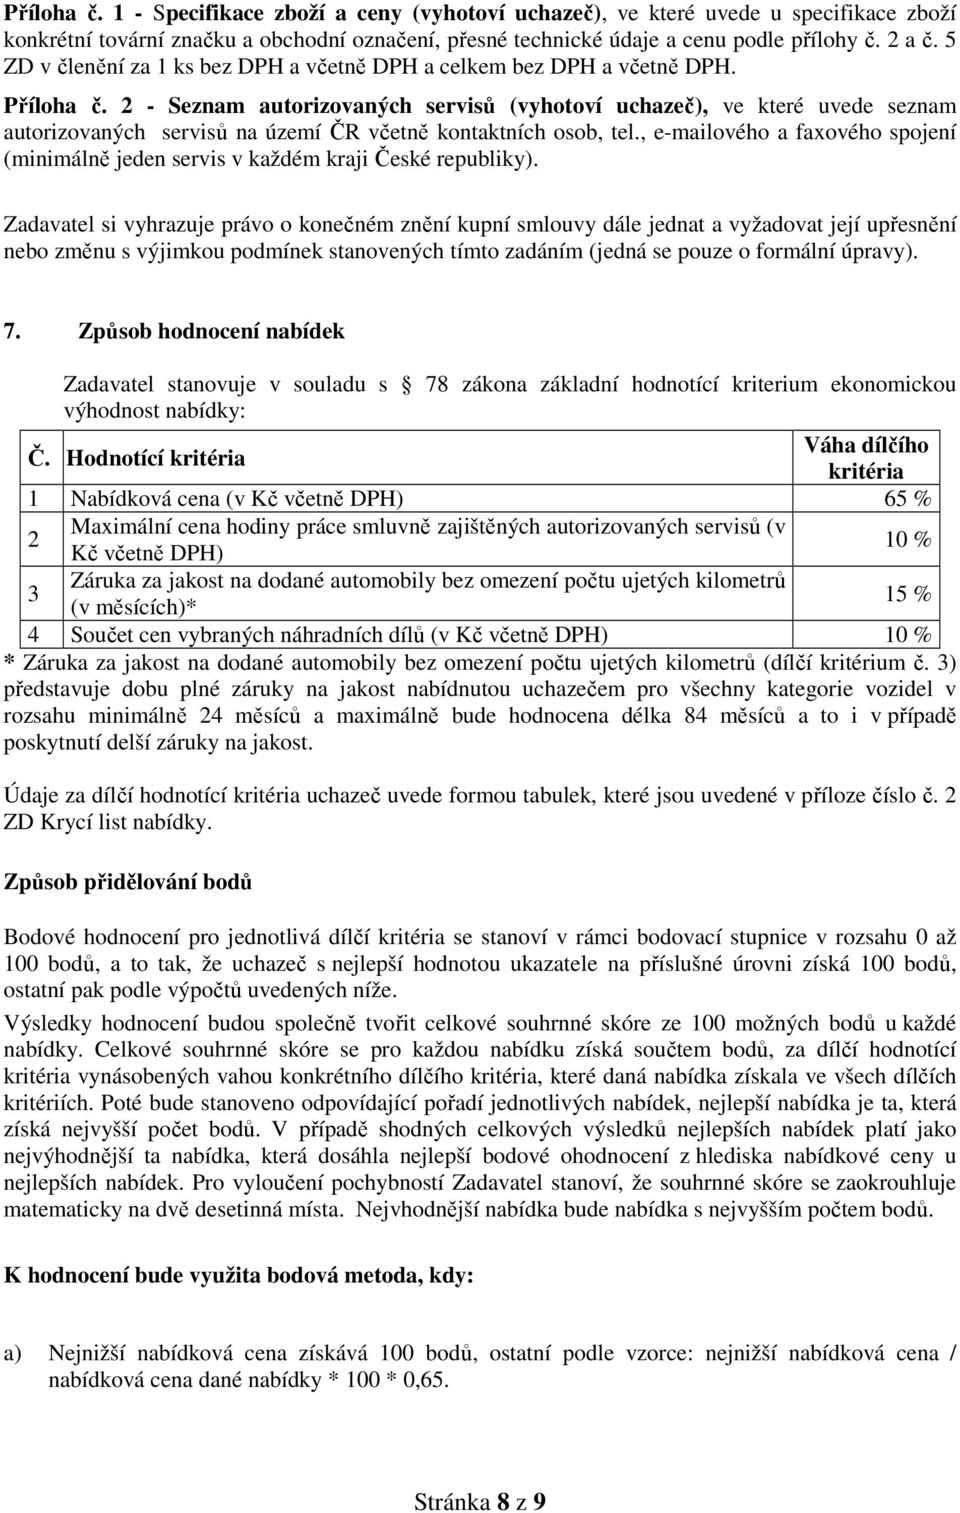 2 - Seznam autorizovaných servisů (vyhotoví uchazeč), ve které uvede seznam autorizovaných servisů na území ČR včetně kontaktních osob, tel.